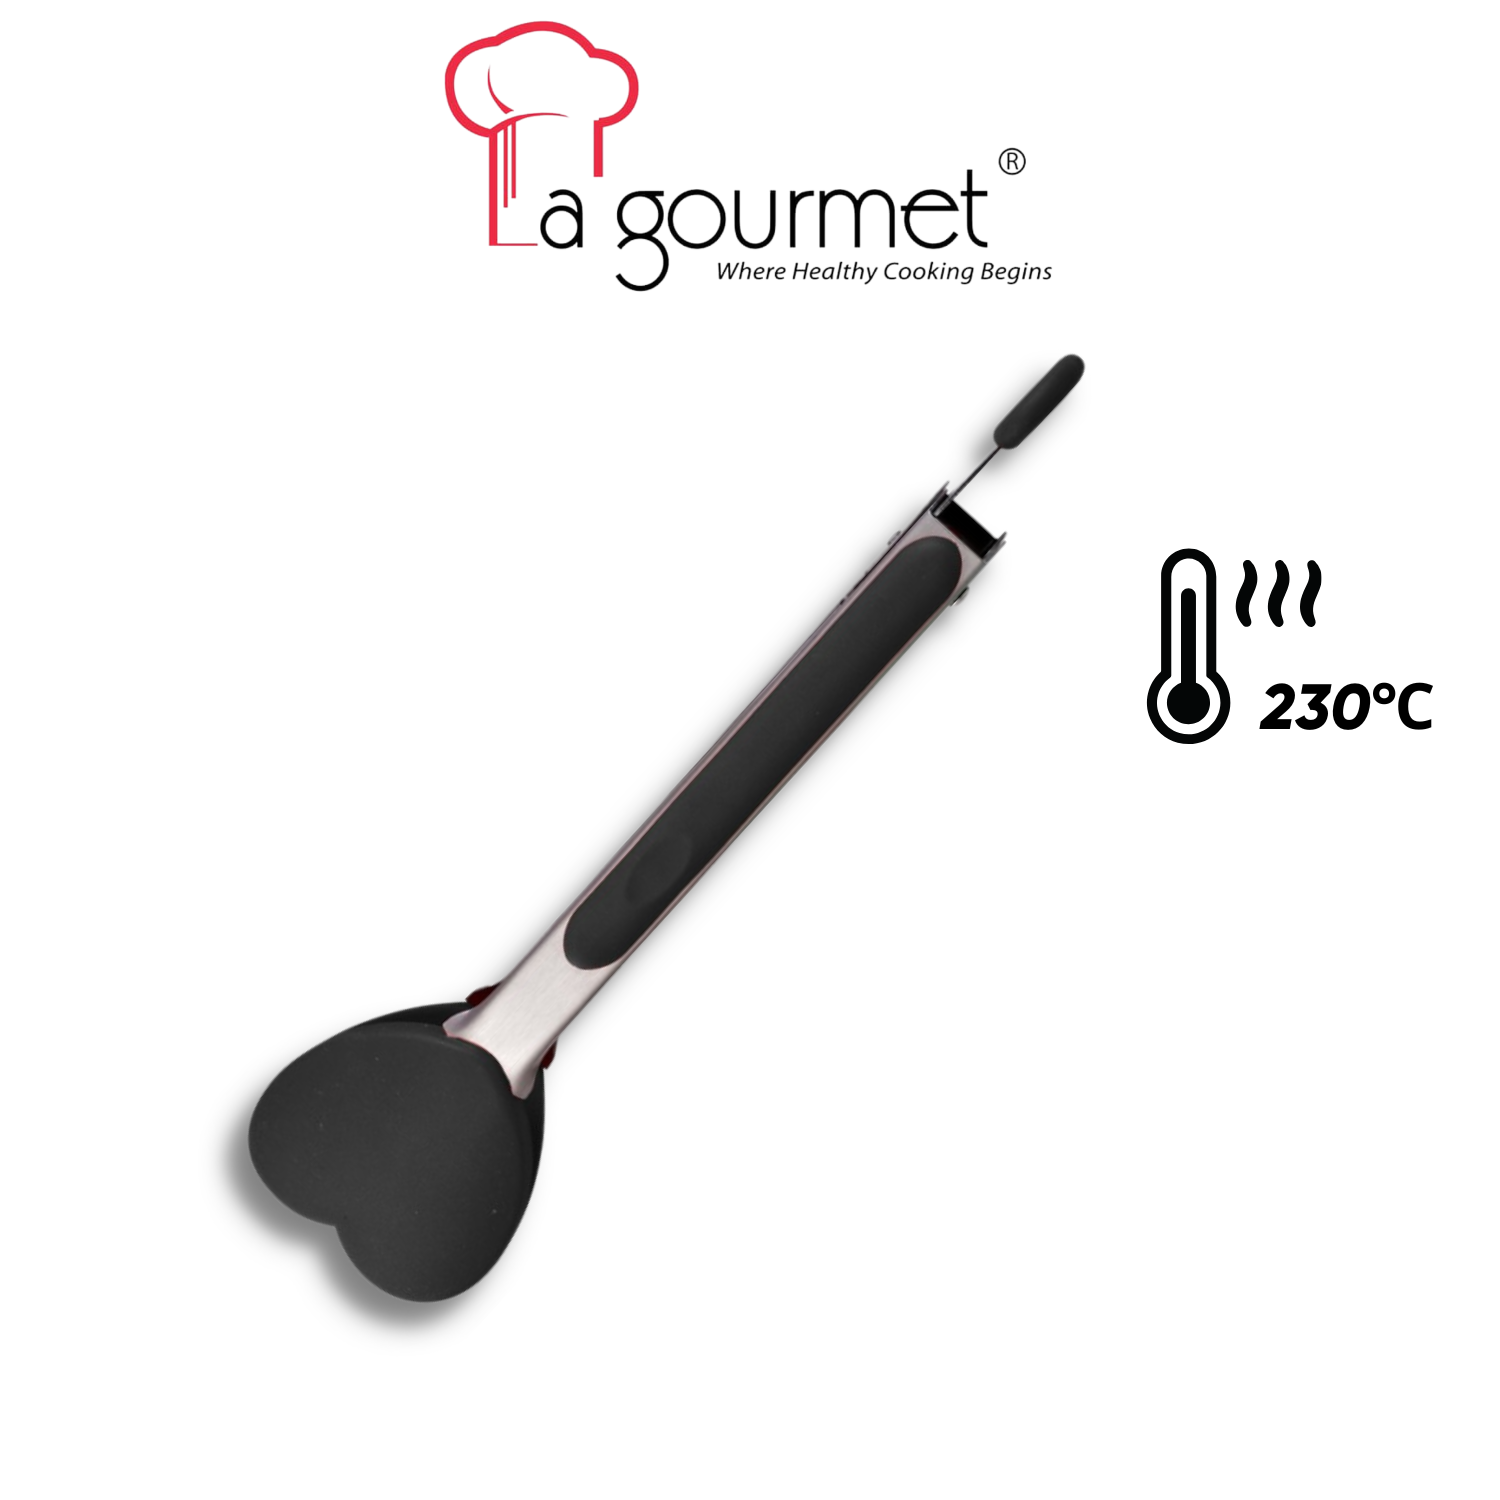 Dụng cụ gắp thực phẩm silicone La gourmet Shogun hình trái tim - 361875 (chịu nhiệt 230 độ C)